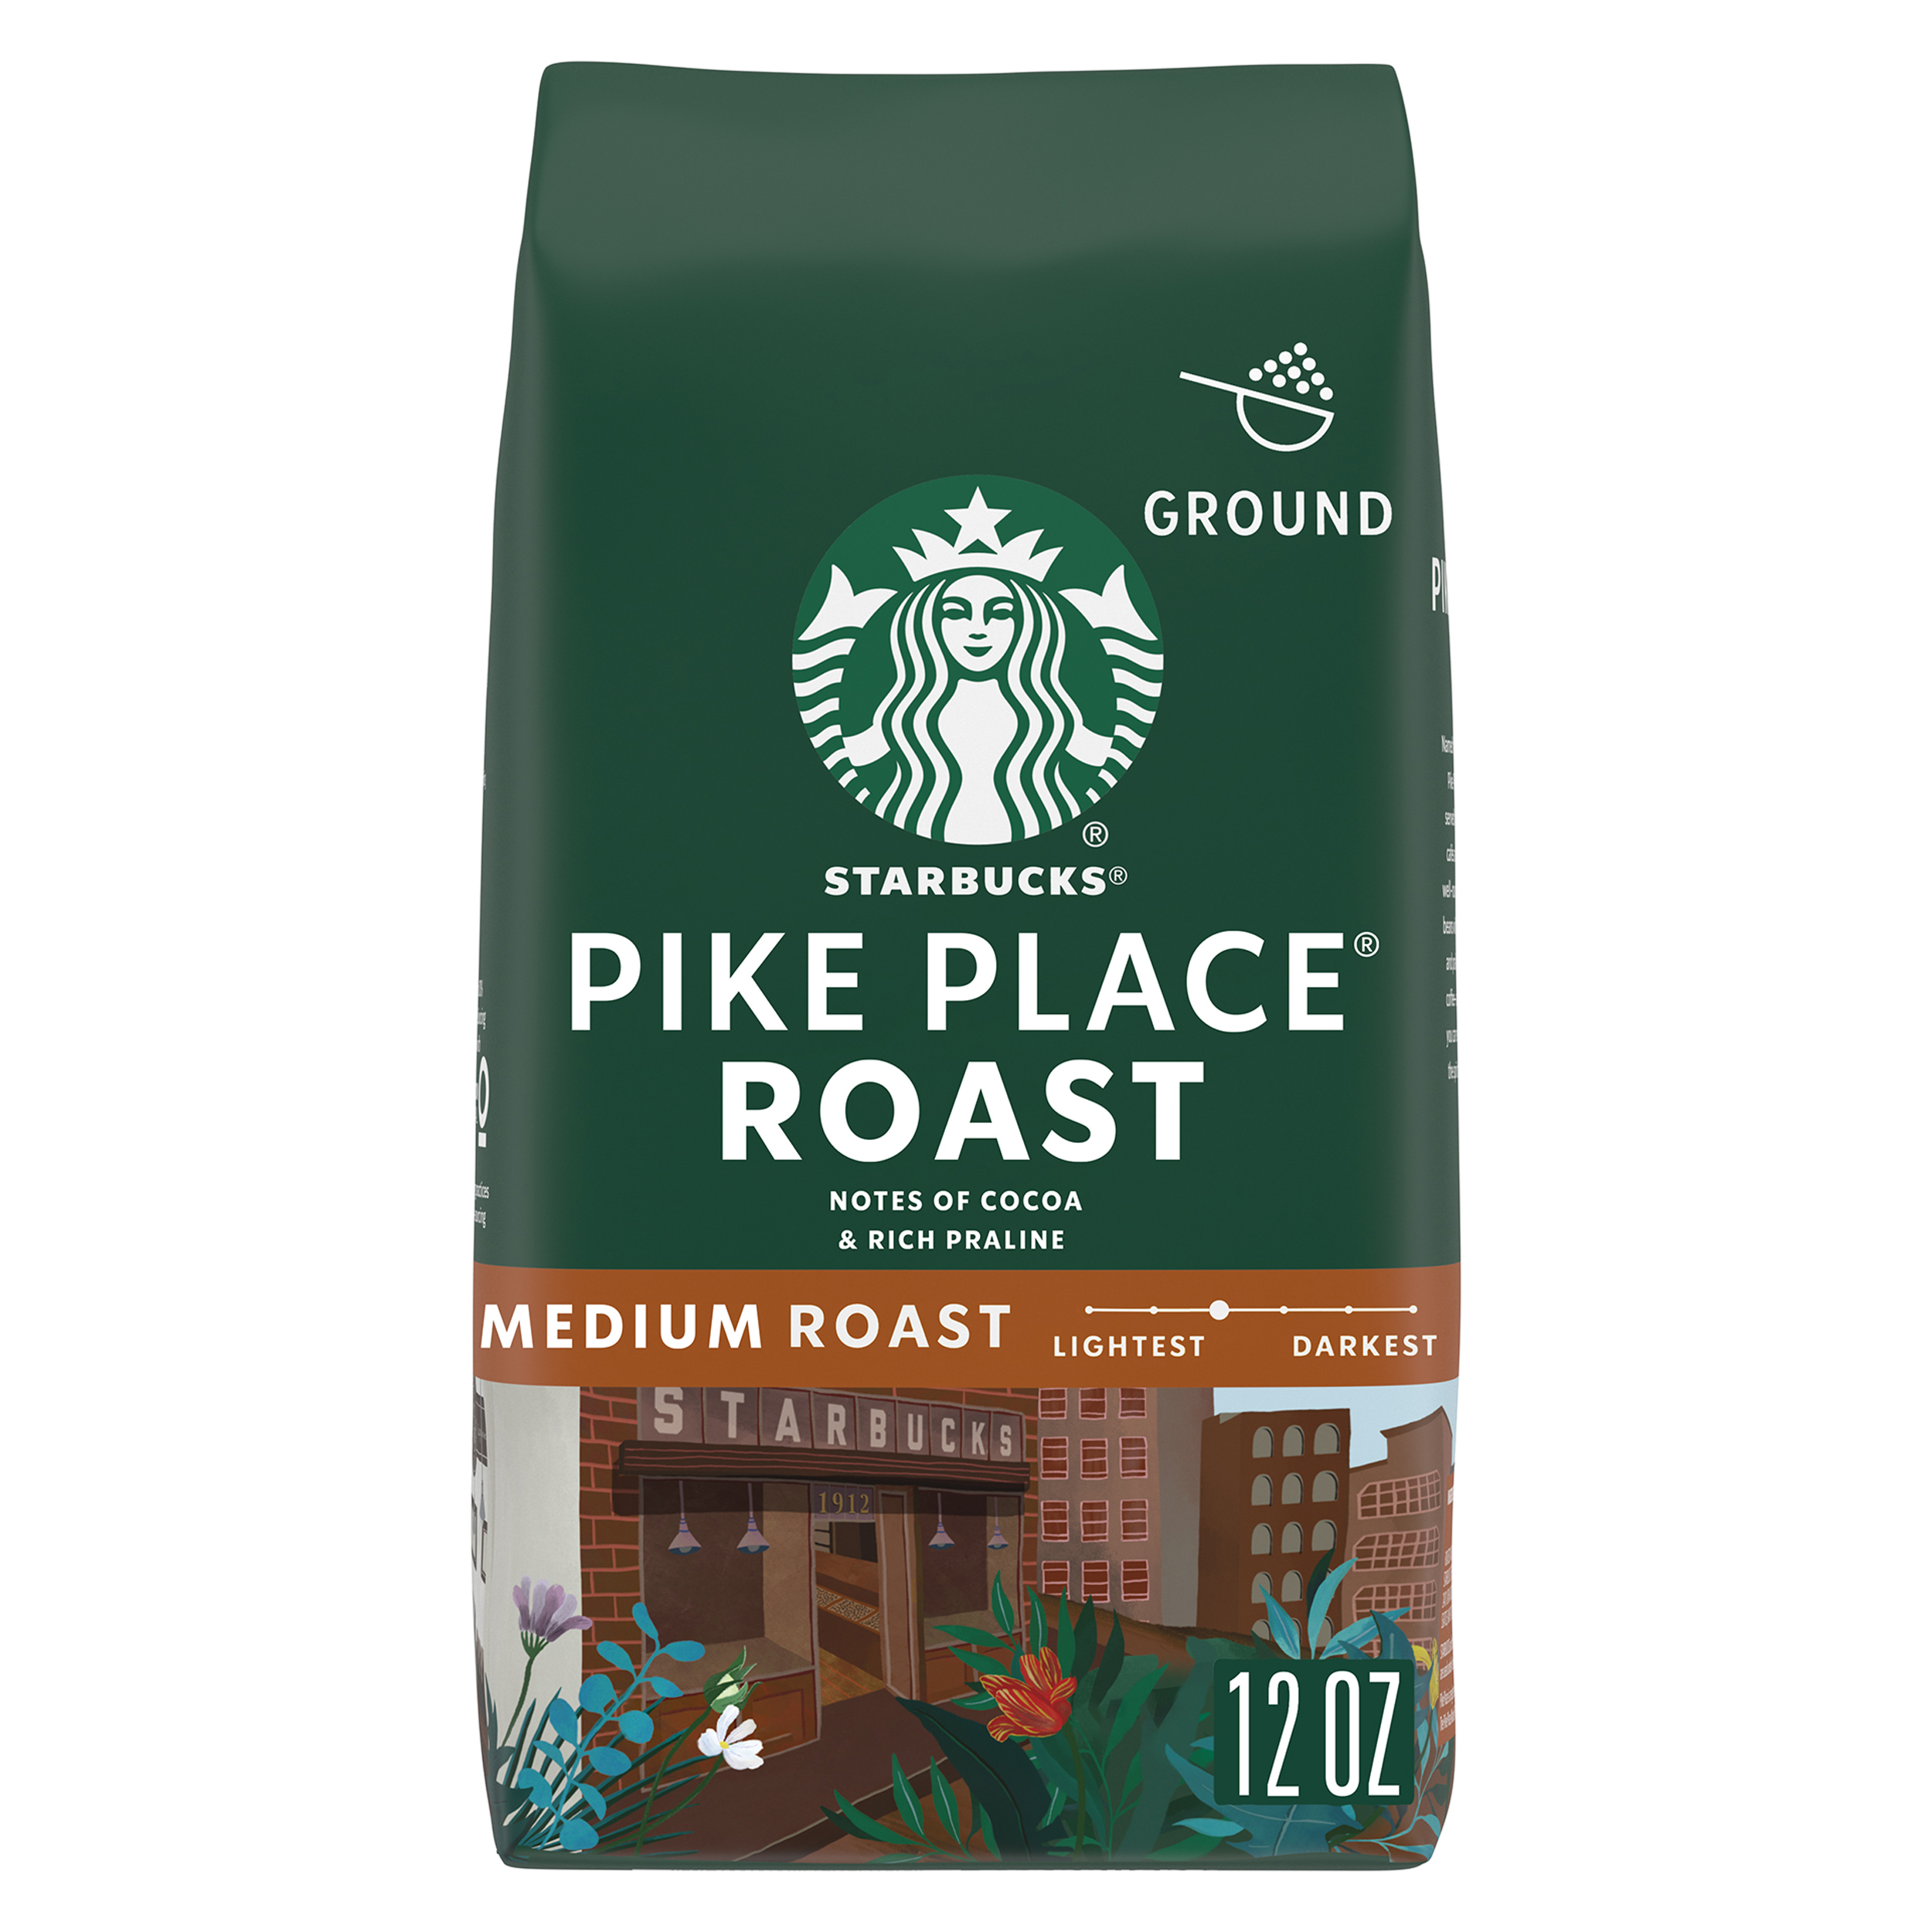 Starbucks Pike Place Roast, Medium Roast Ground Coffee, 100% Arabica, 12 oz - image 1 of 8